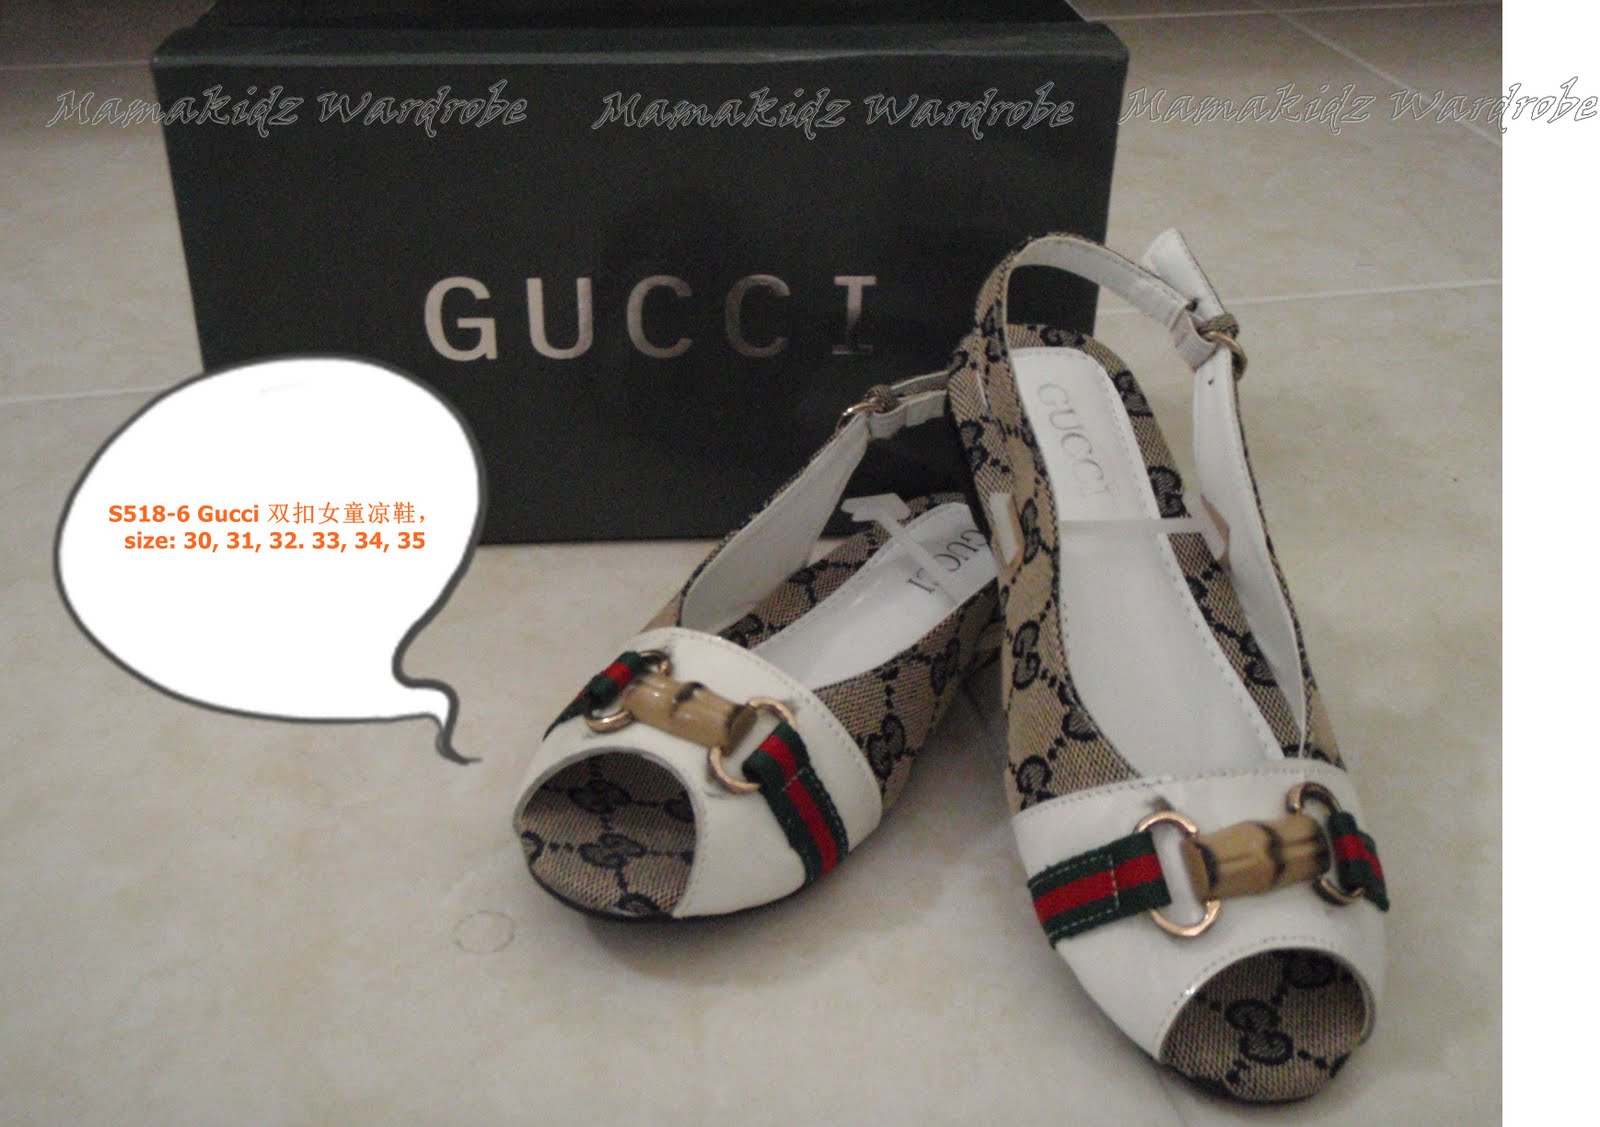 Replica Gucci & LV kids shoes: Replica Gucci & LV kids shoes: Replica Gucci & LV Shoes